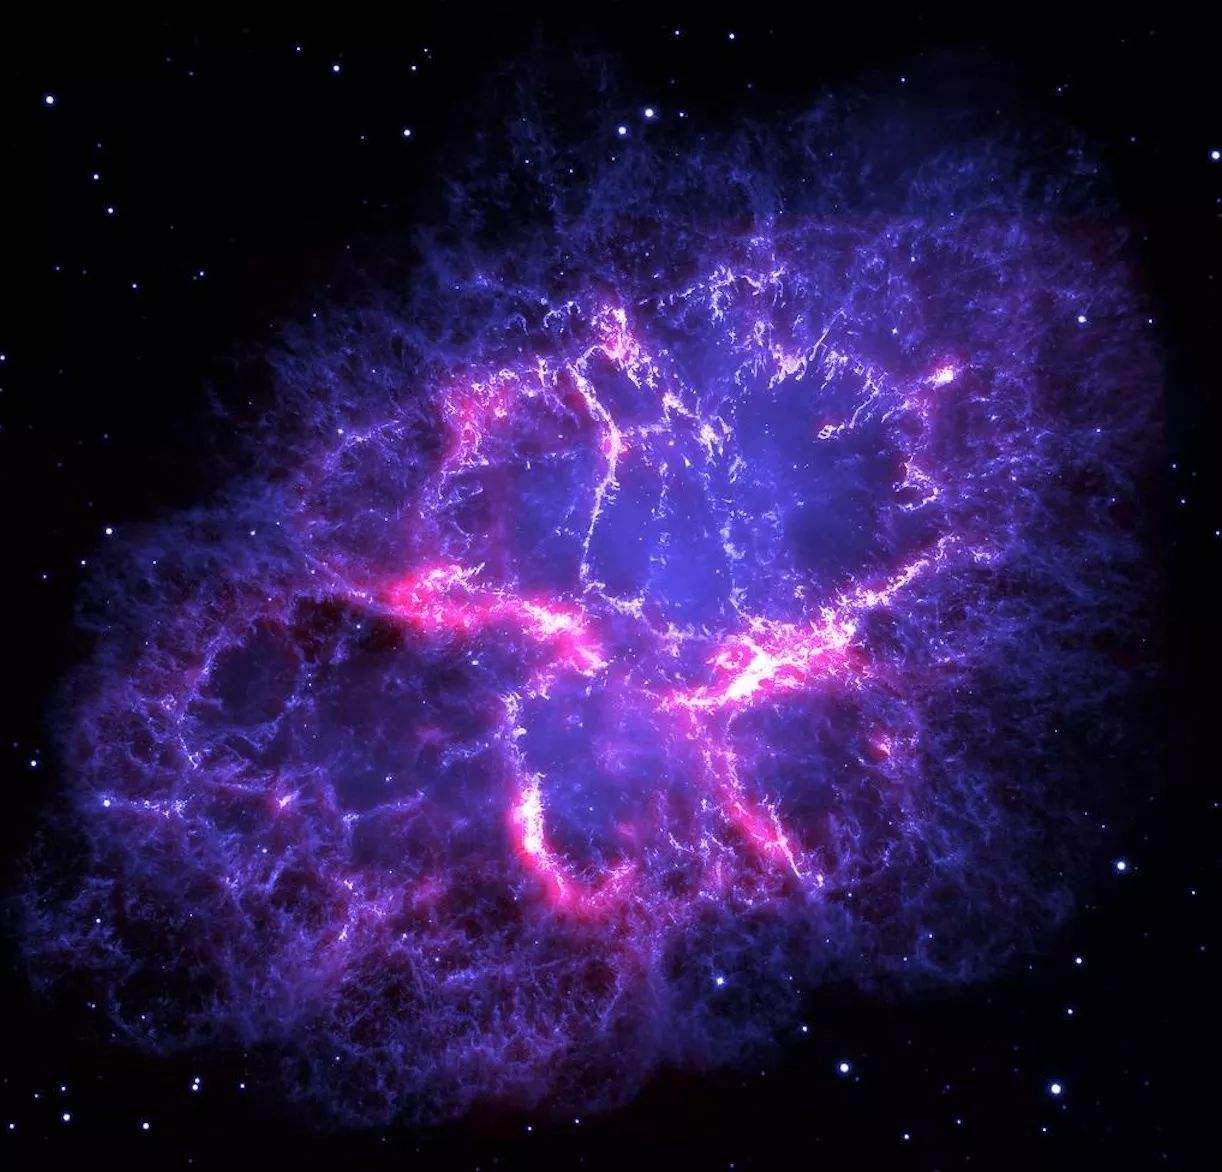 观察到银河系中唯一的超新星时代恰好是中国在科学领域领先的时代